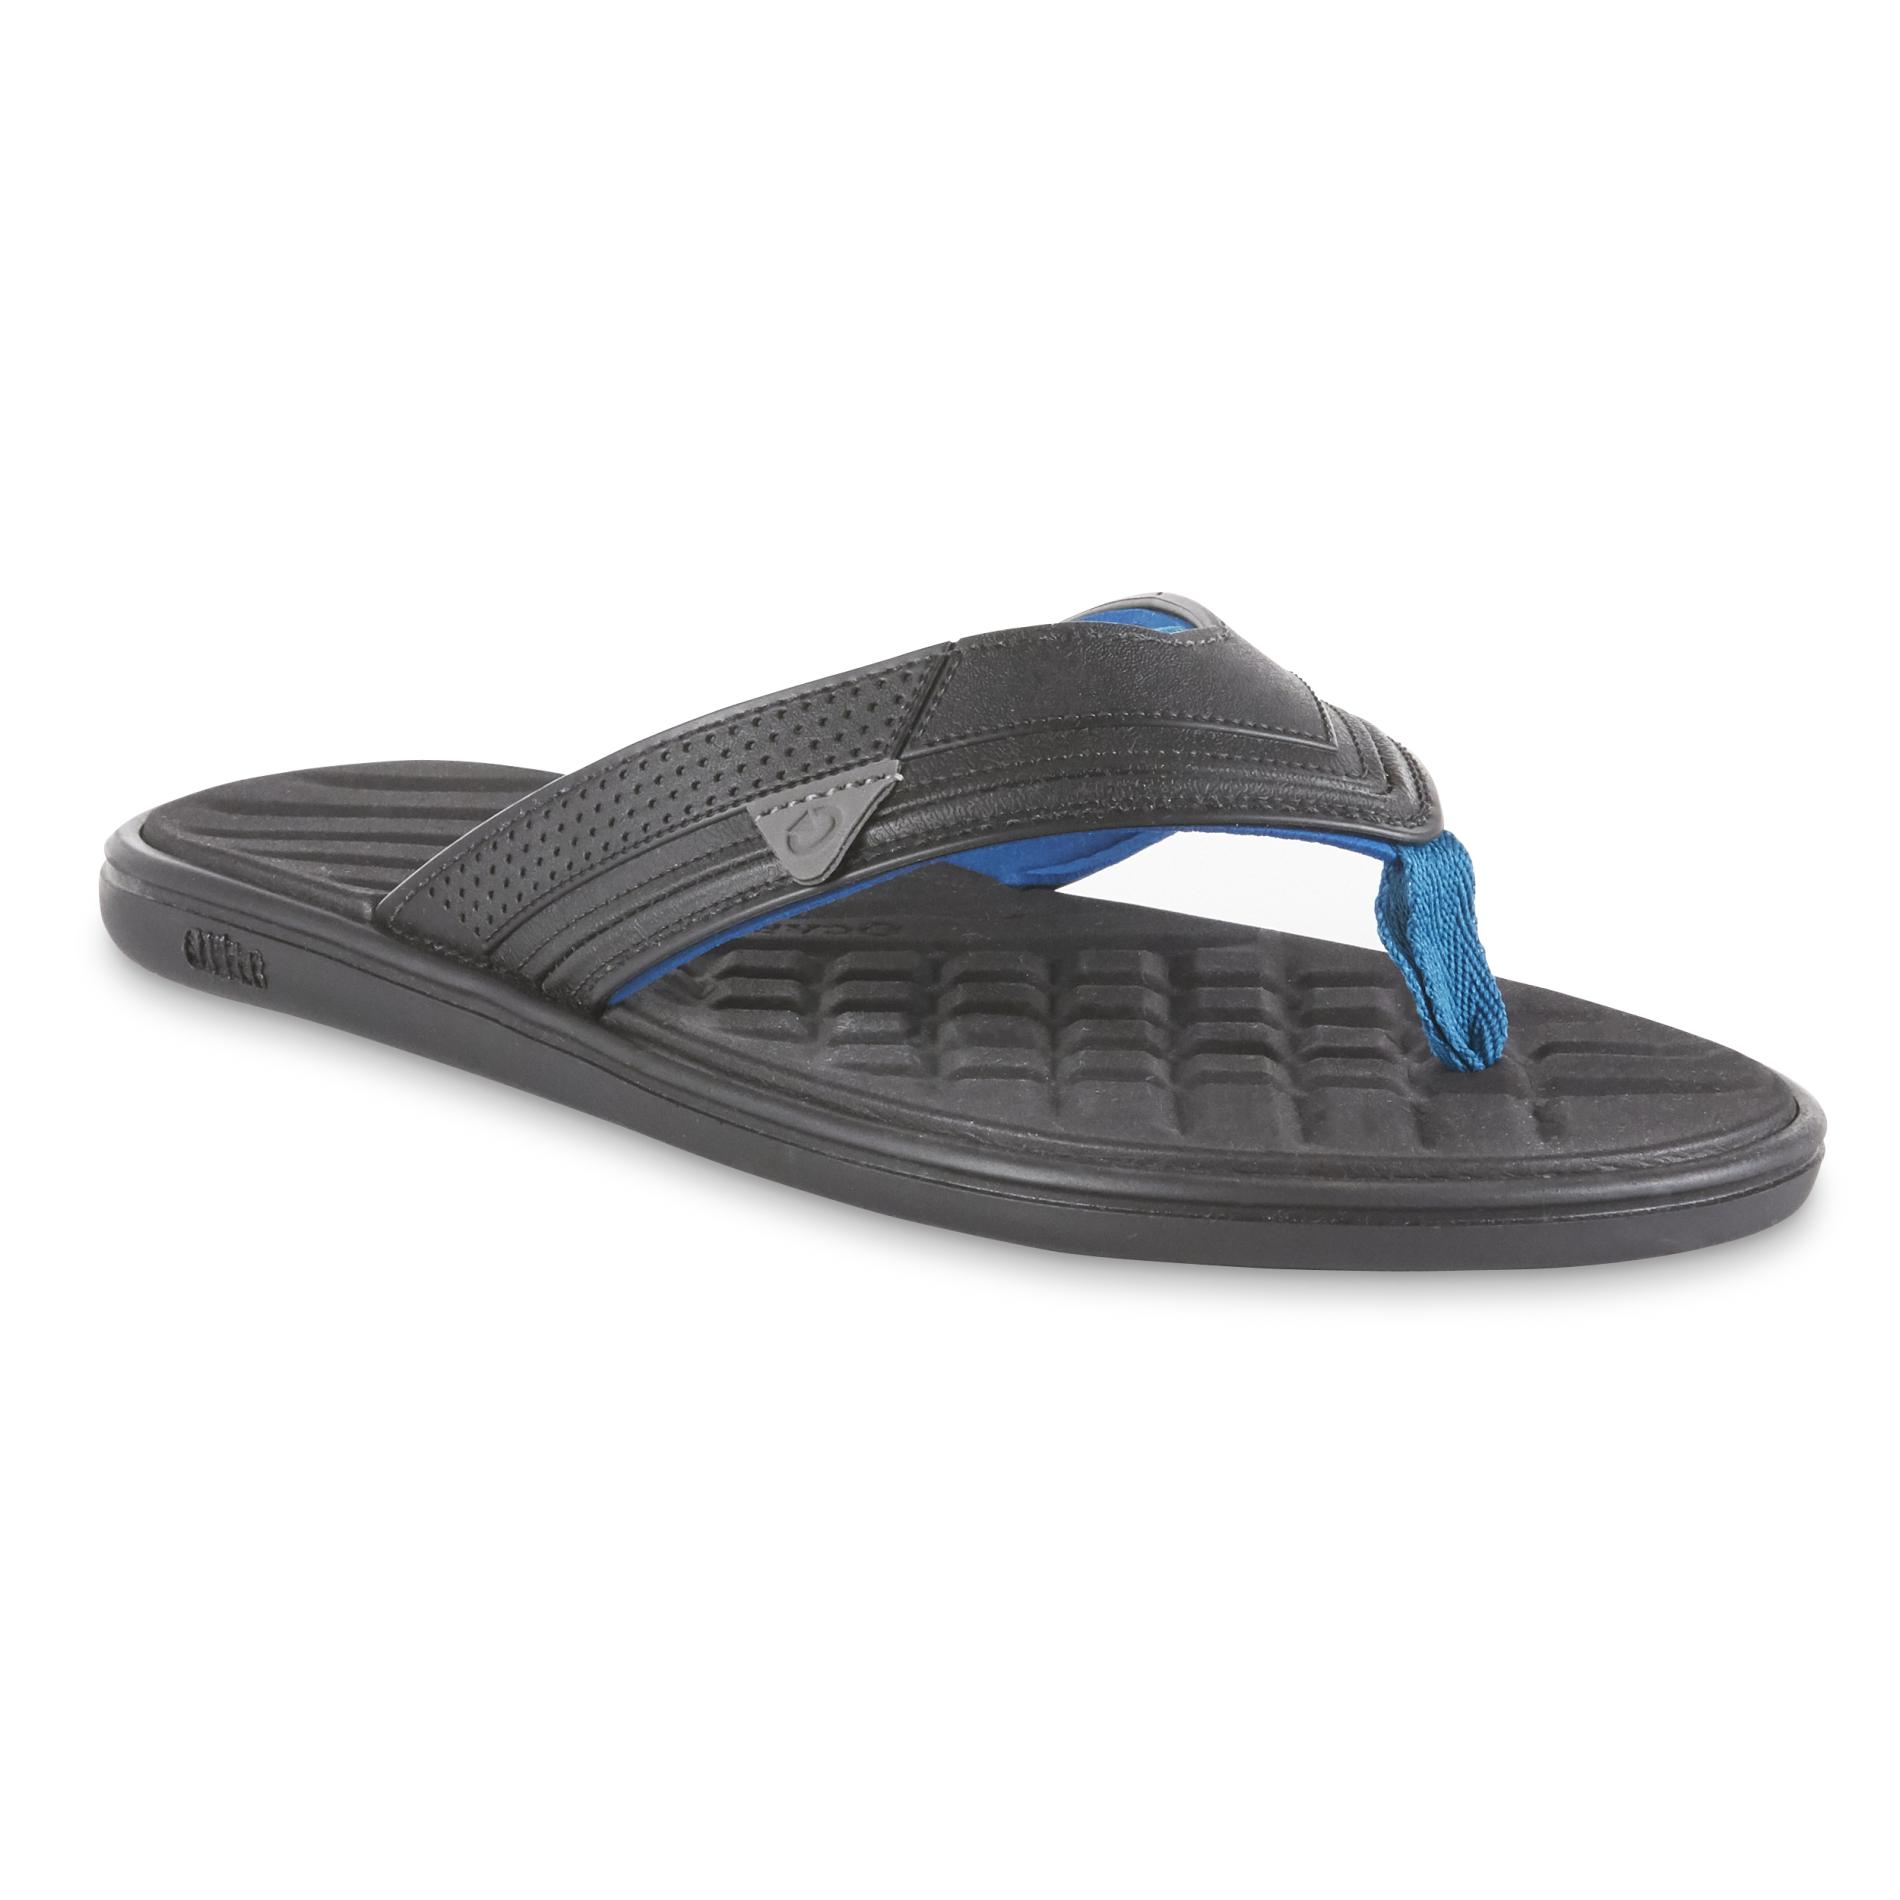 black and blue flip flops